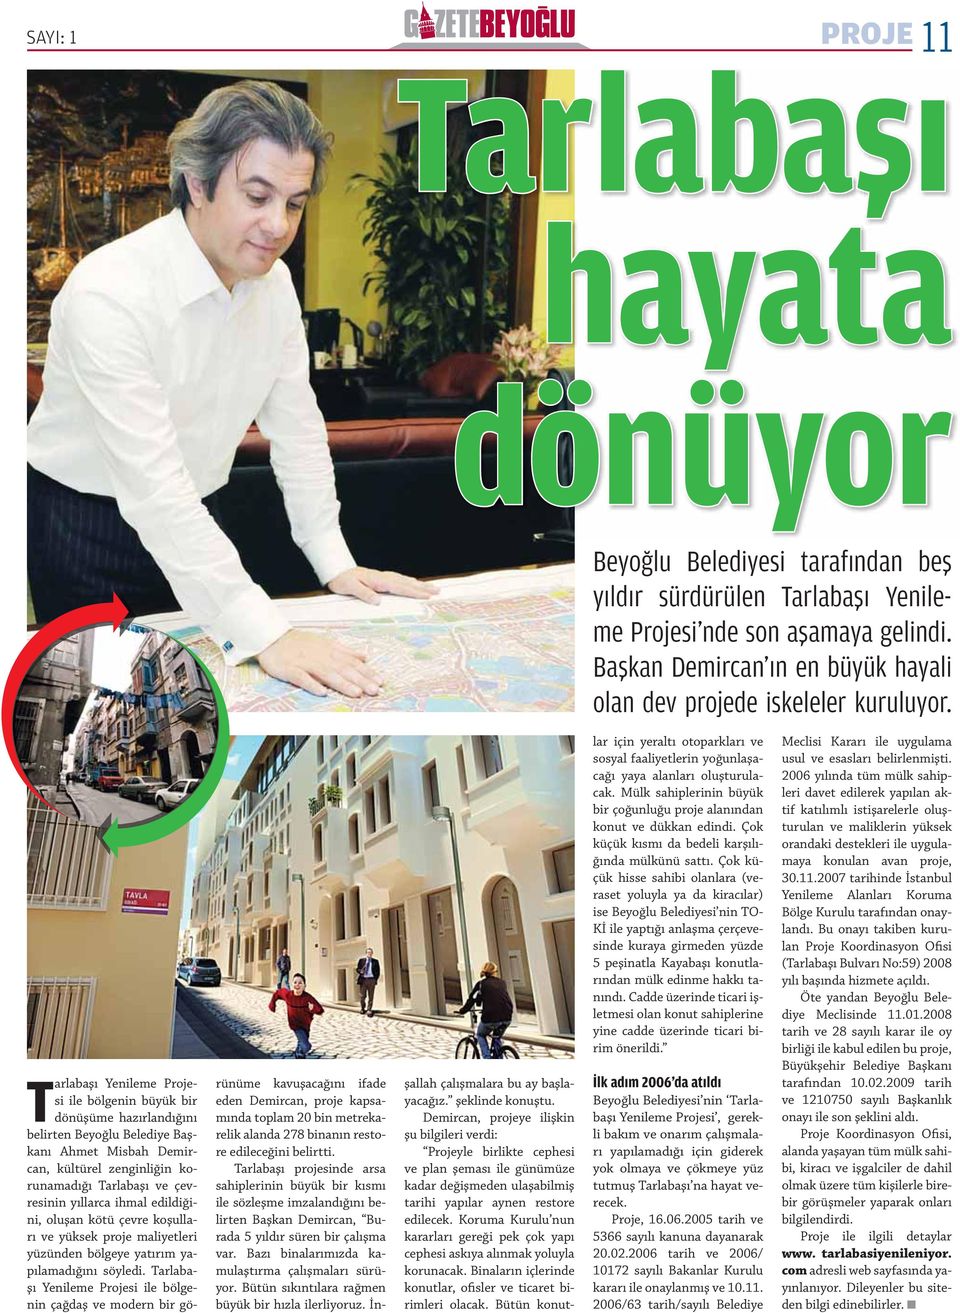 Tarlabaşı Yenileme Projesi ile bölgenin büyük bir dönüşüme hazırlandığını belirten Beyoğlu Belediye Başkanı Ahmet Misbah Demircan, kültürel zenginliğin korunamadığı Tarlabaşı ve çevresinin yıllarca